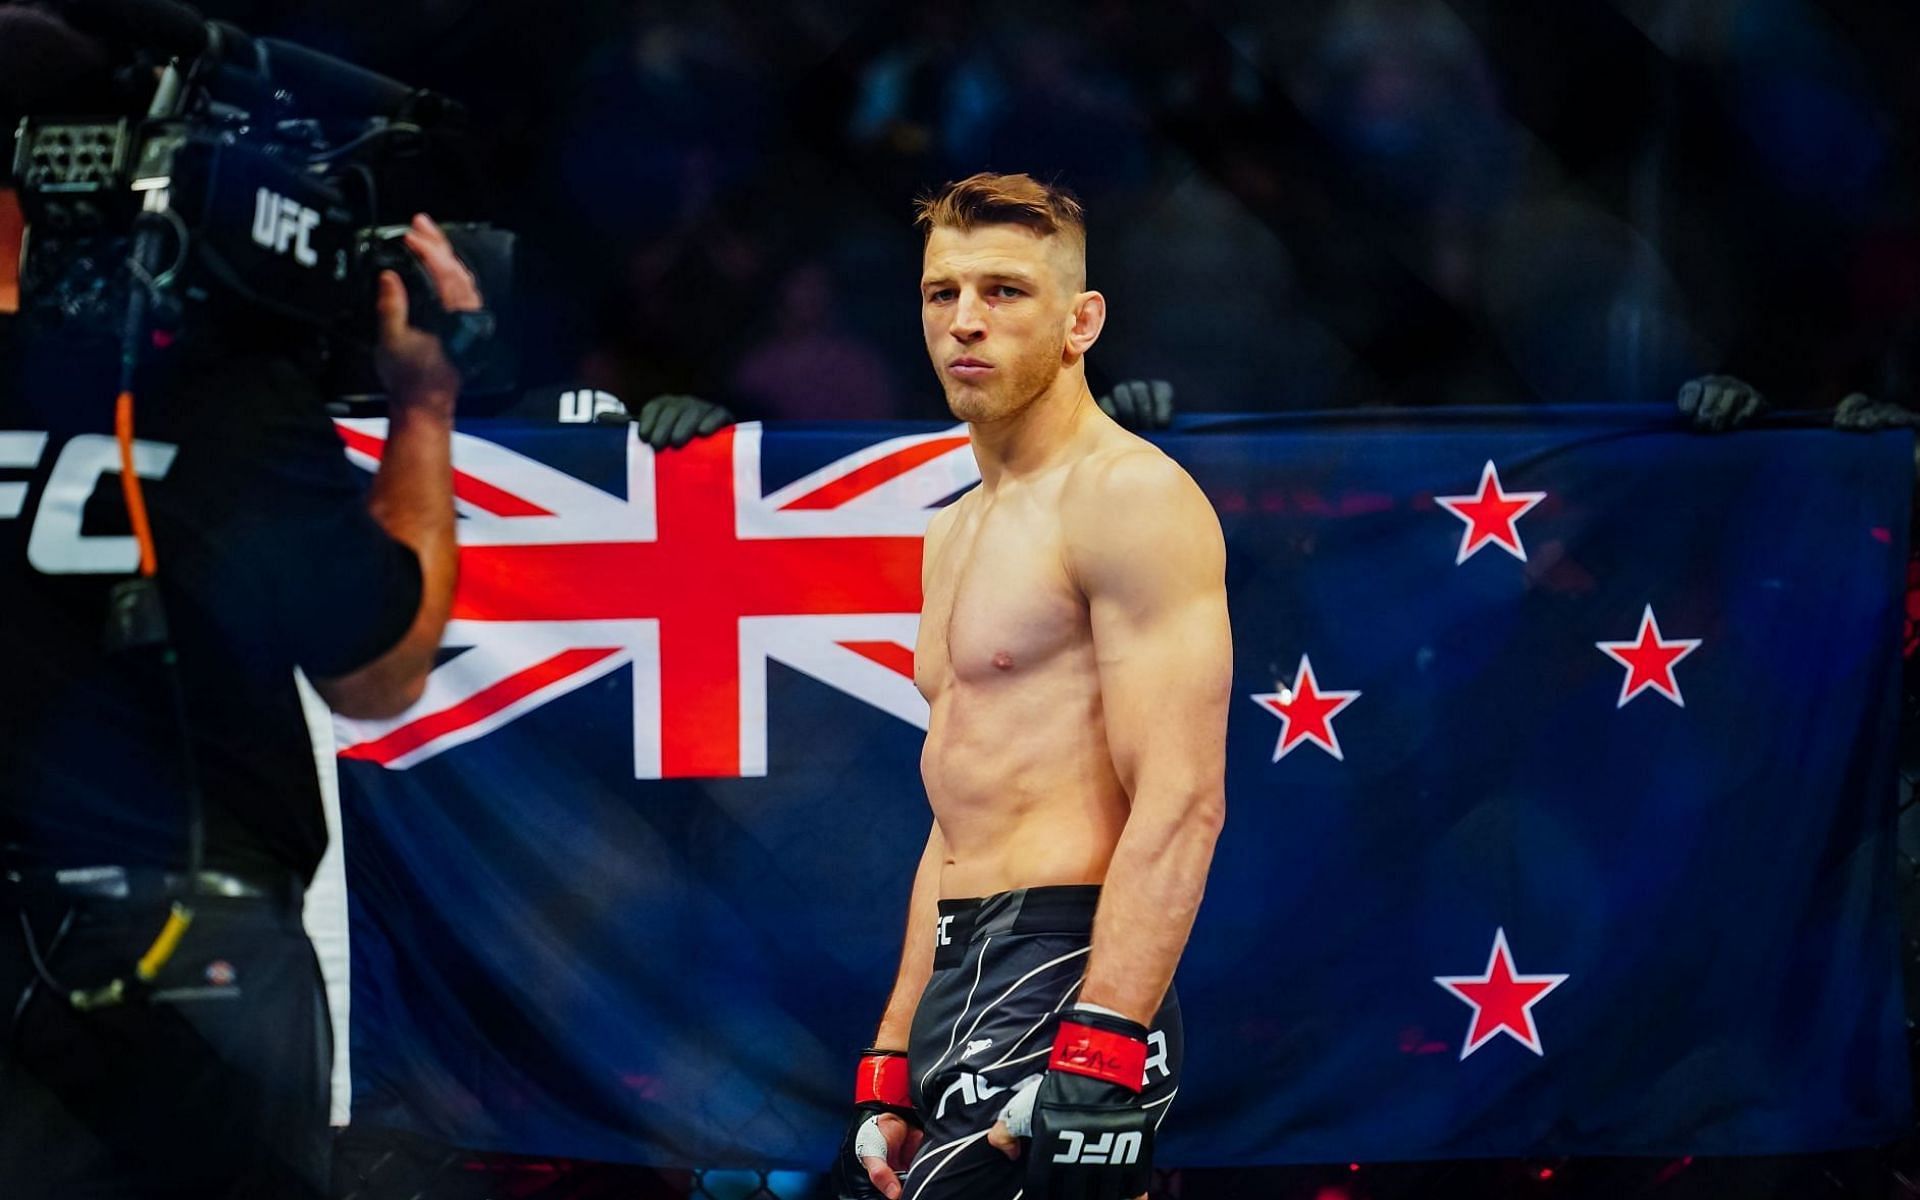 Kiwi UFC lightweight contender Dan Hooker